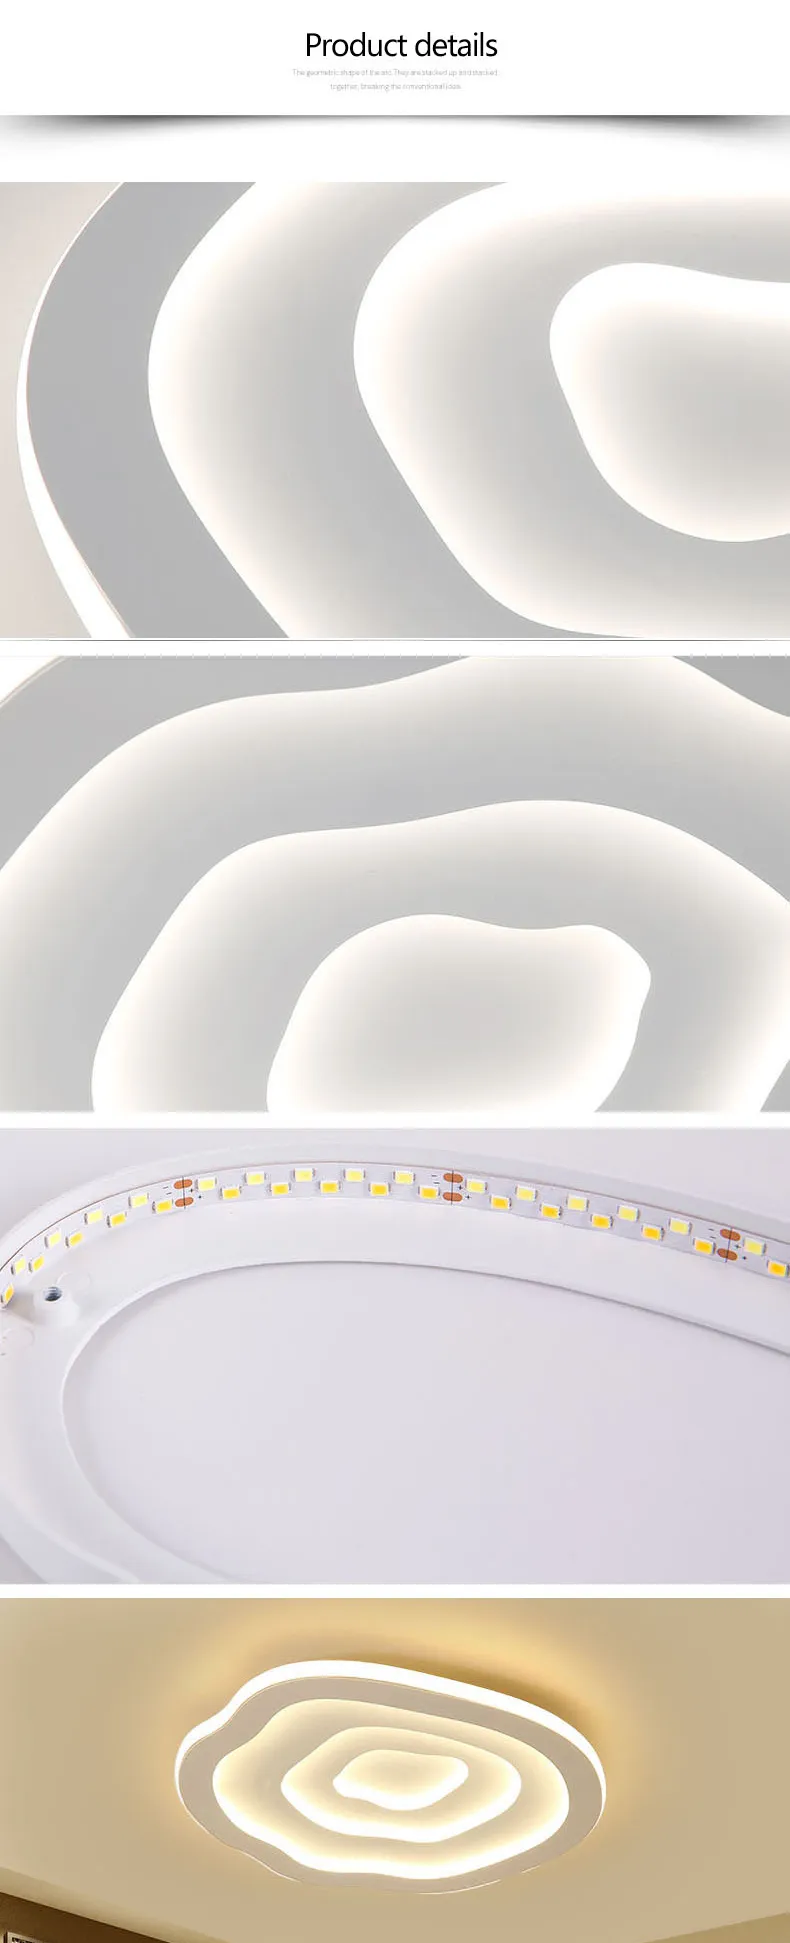 Облака Современные светодиодные потолочные светильники для гостиной спальной комнаты Белый цвет светодиодные потолочные лампы Lampara Techo AC110V-240V280M